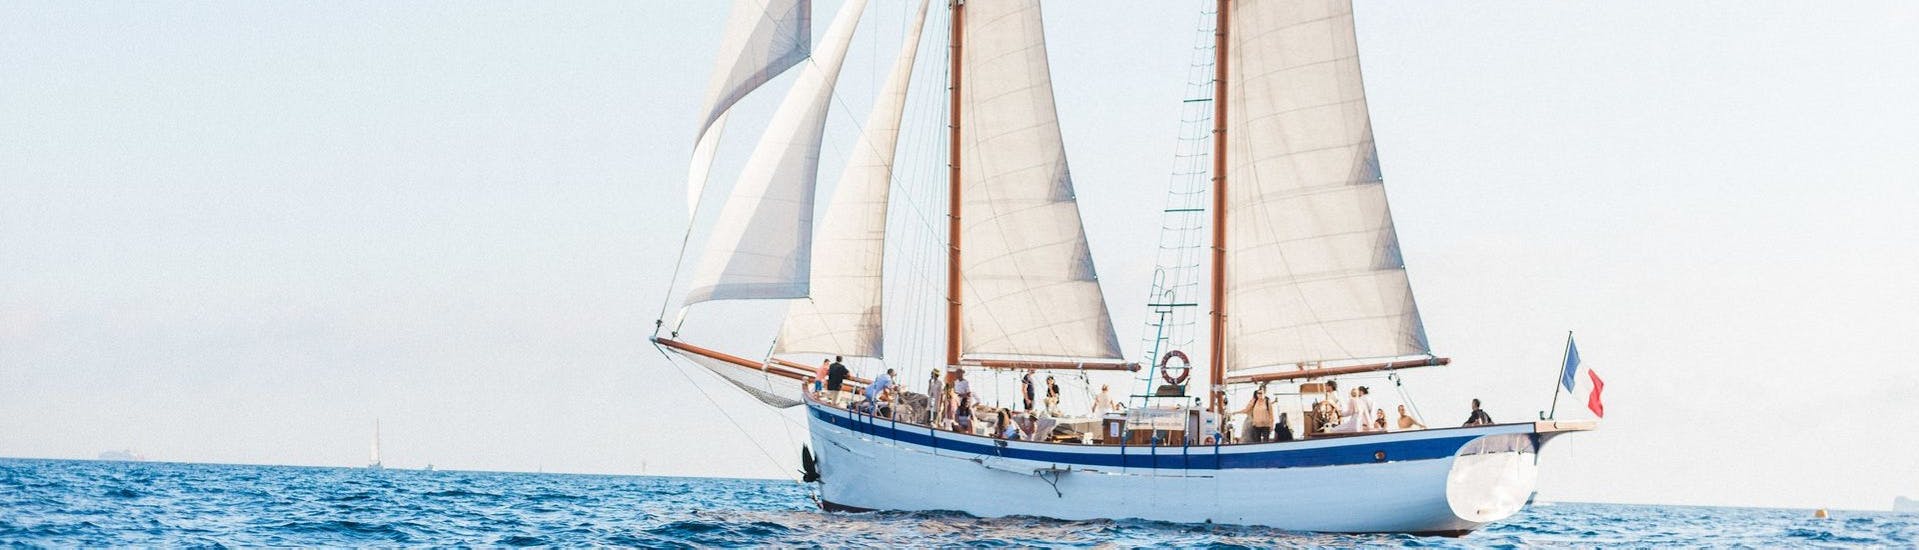 Unser stolzes Boot La Goélette Alliance, fotografiert während einer privaten Segeltour zu den Calanques von Marseille oder den Frioul-Inseln.